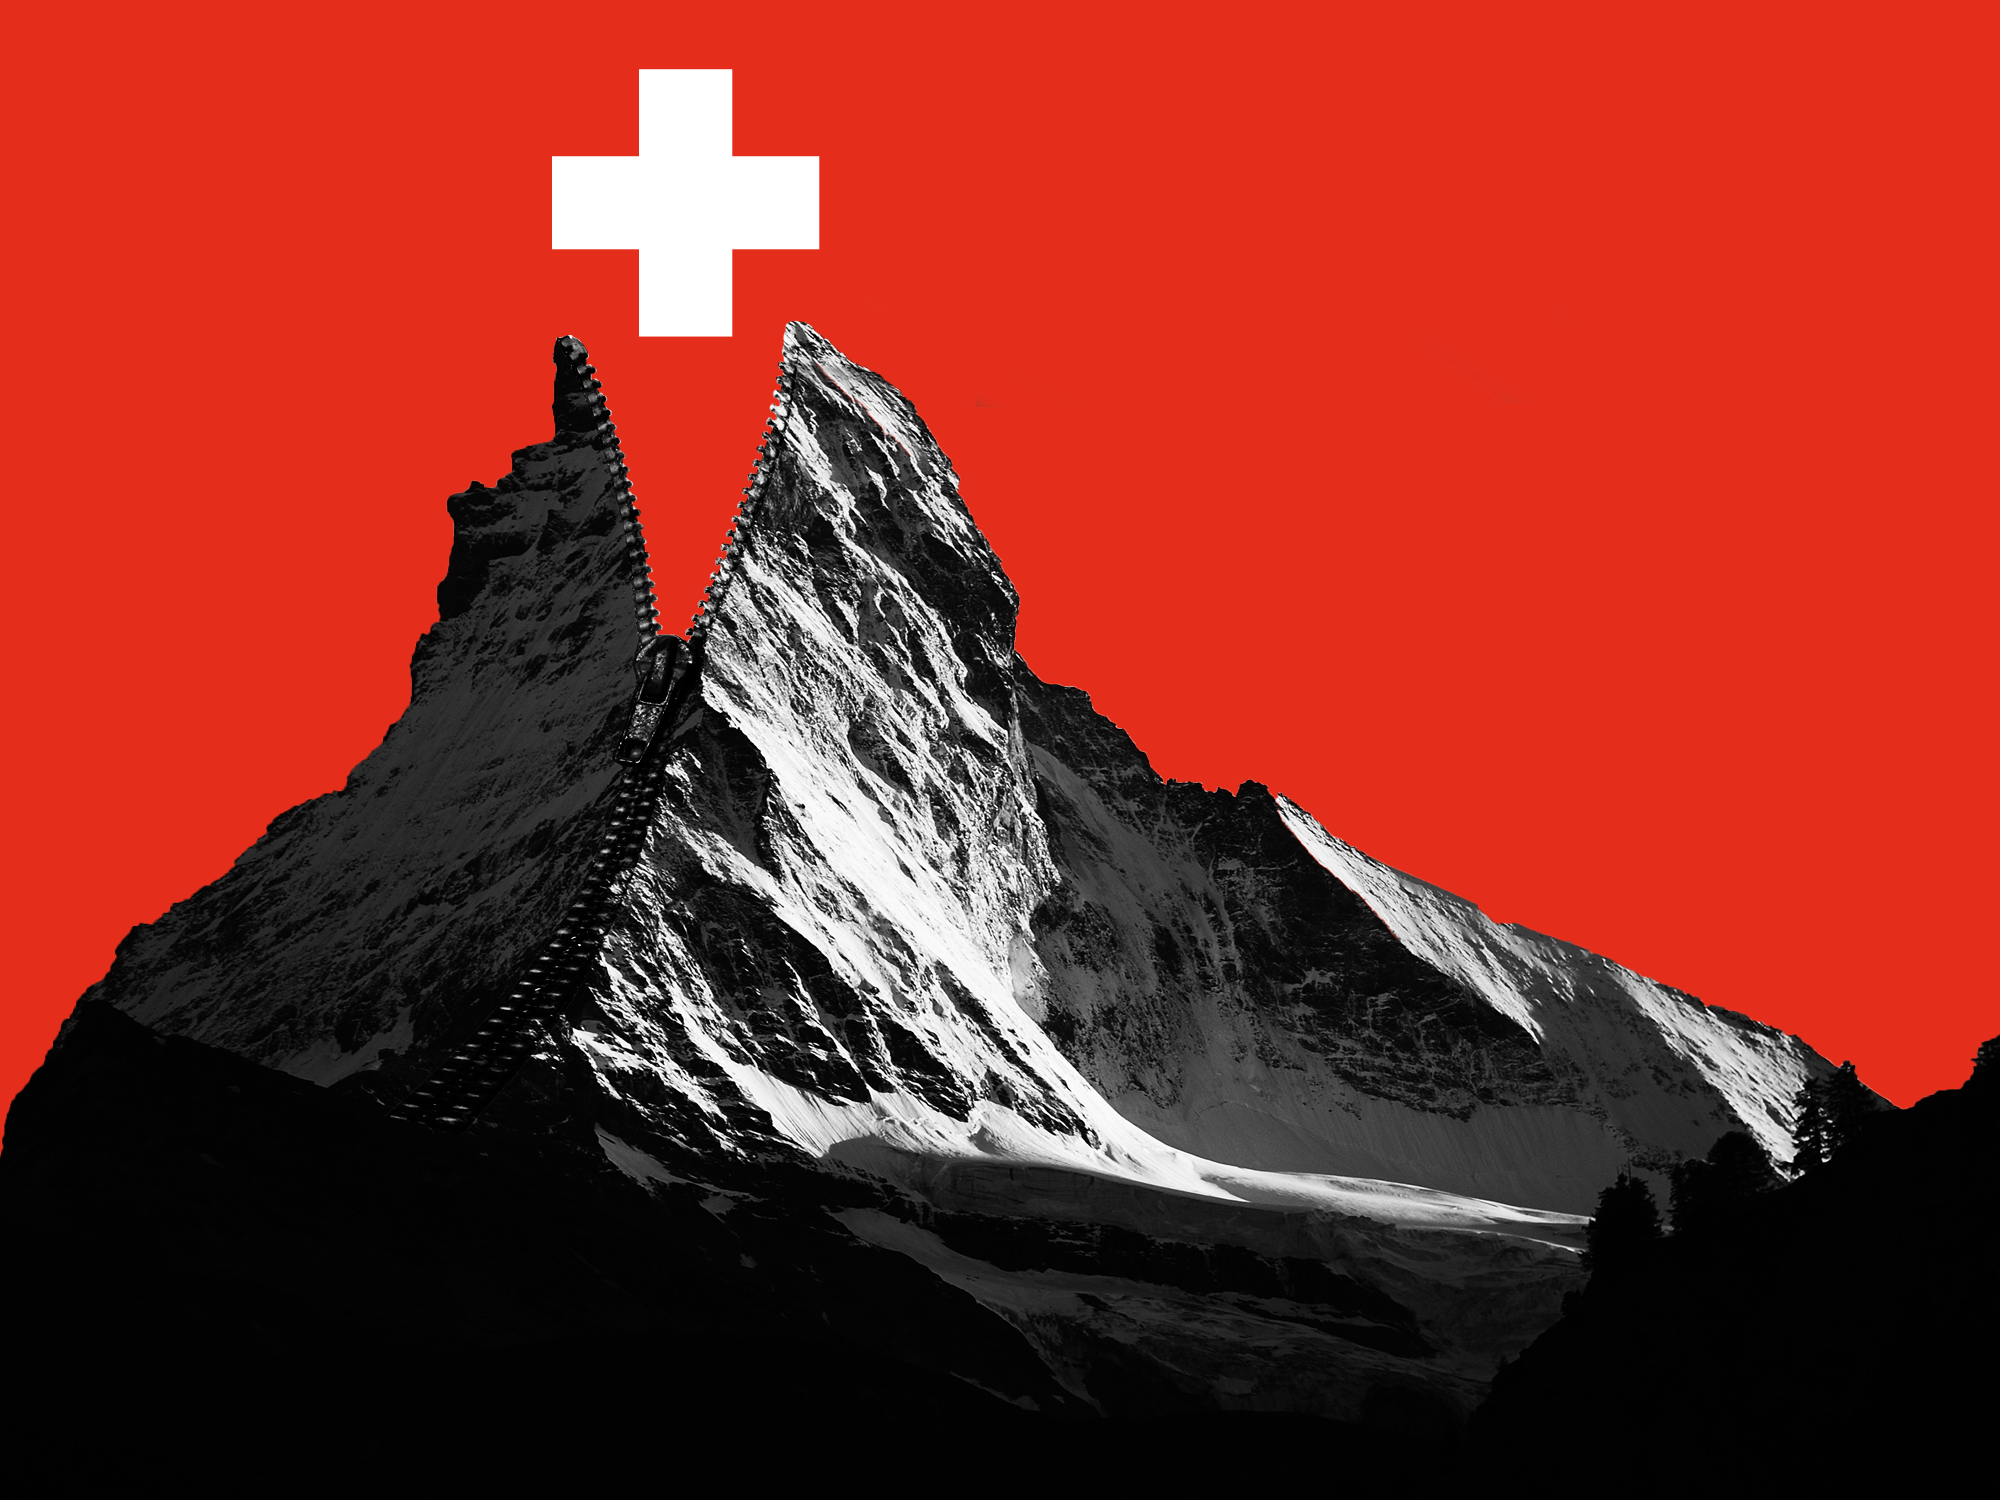 Das Jugendkomitee für eine offene Schweiz 2018: Wir verteidigen die Menschenrechte